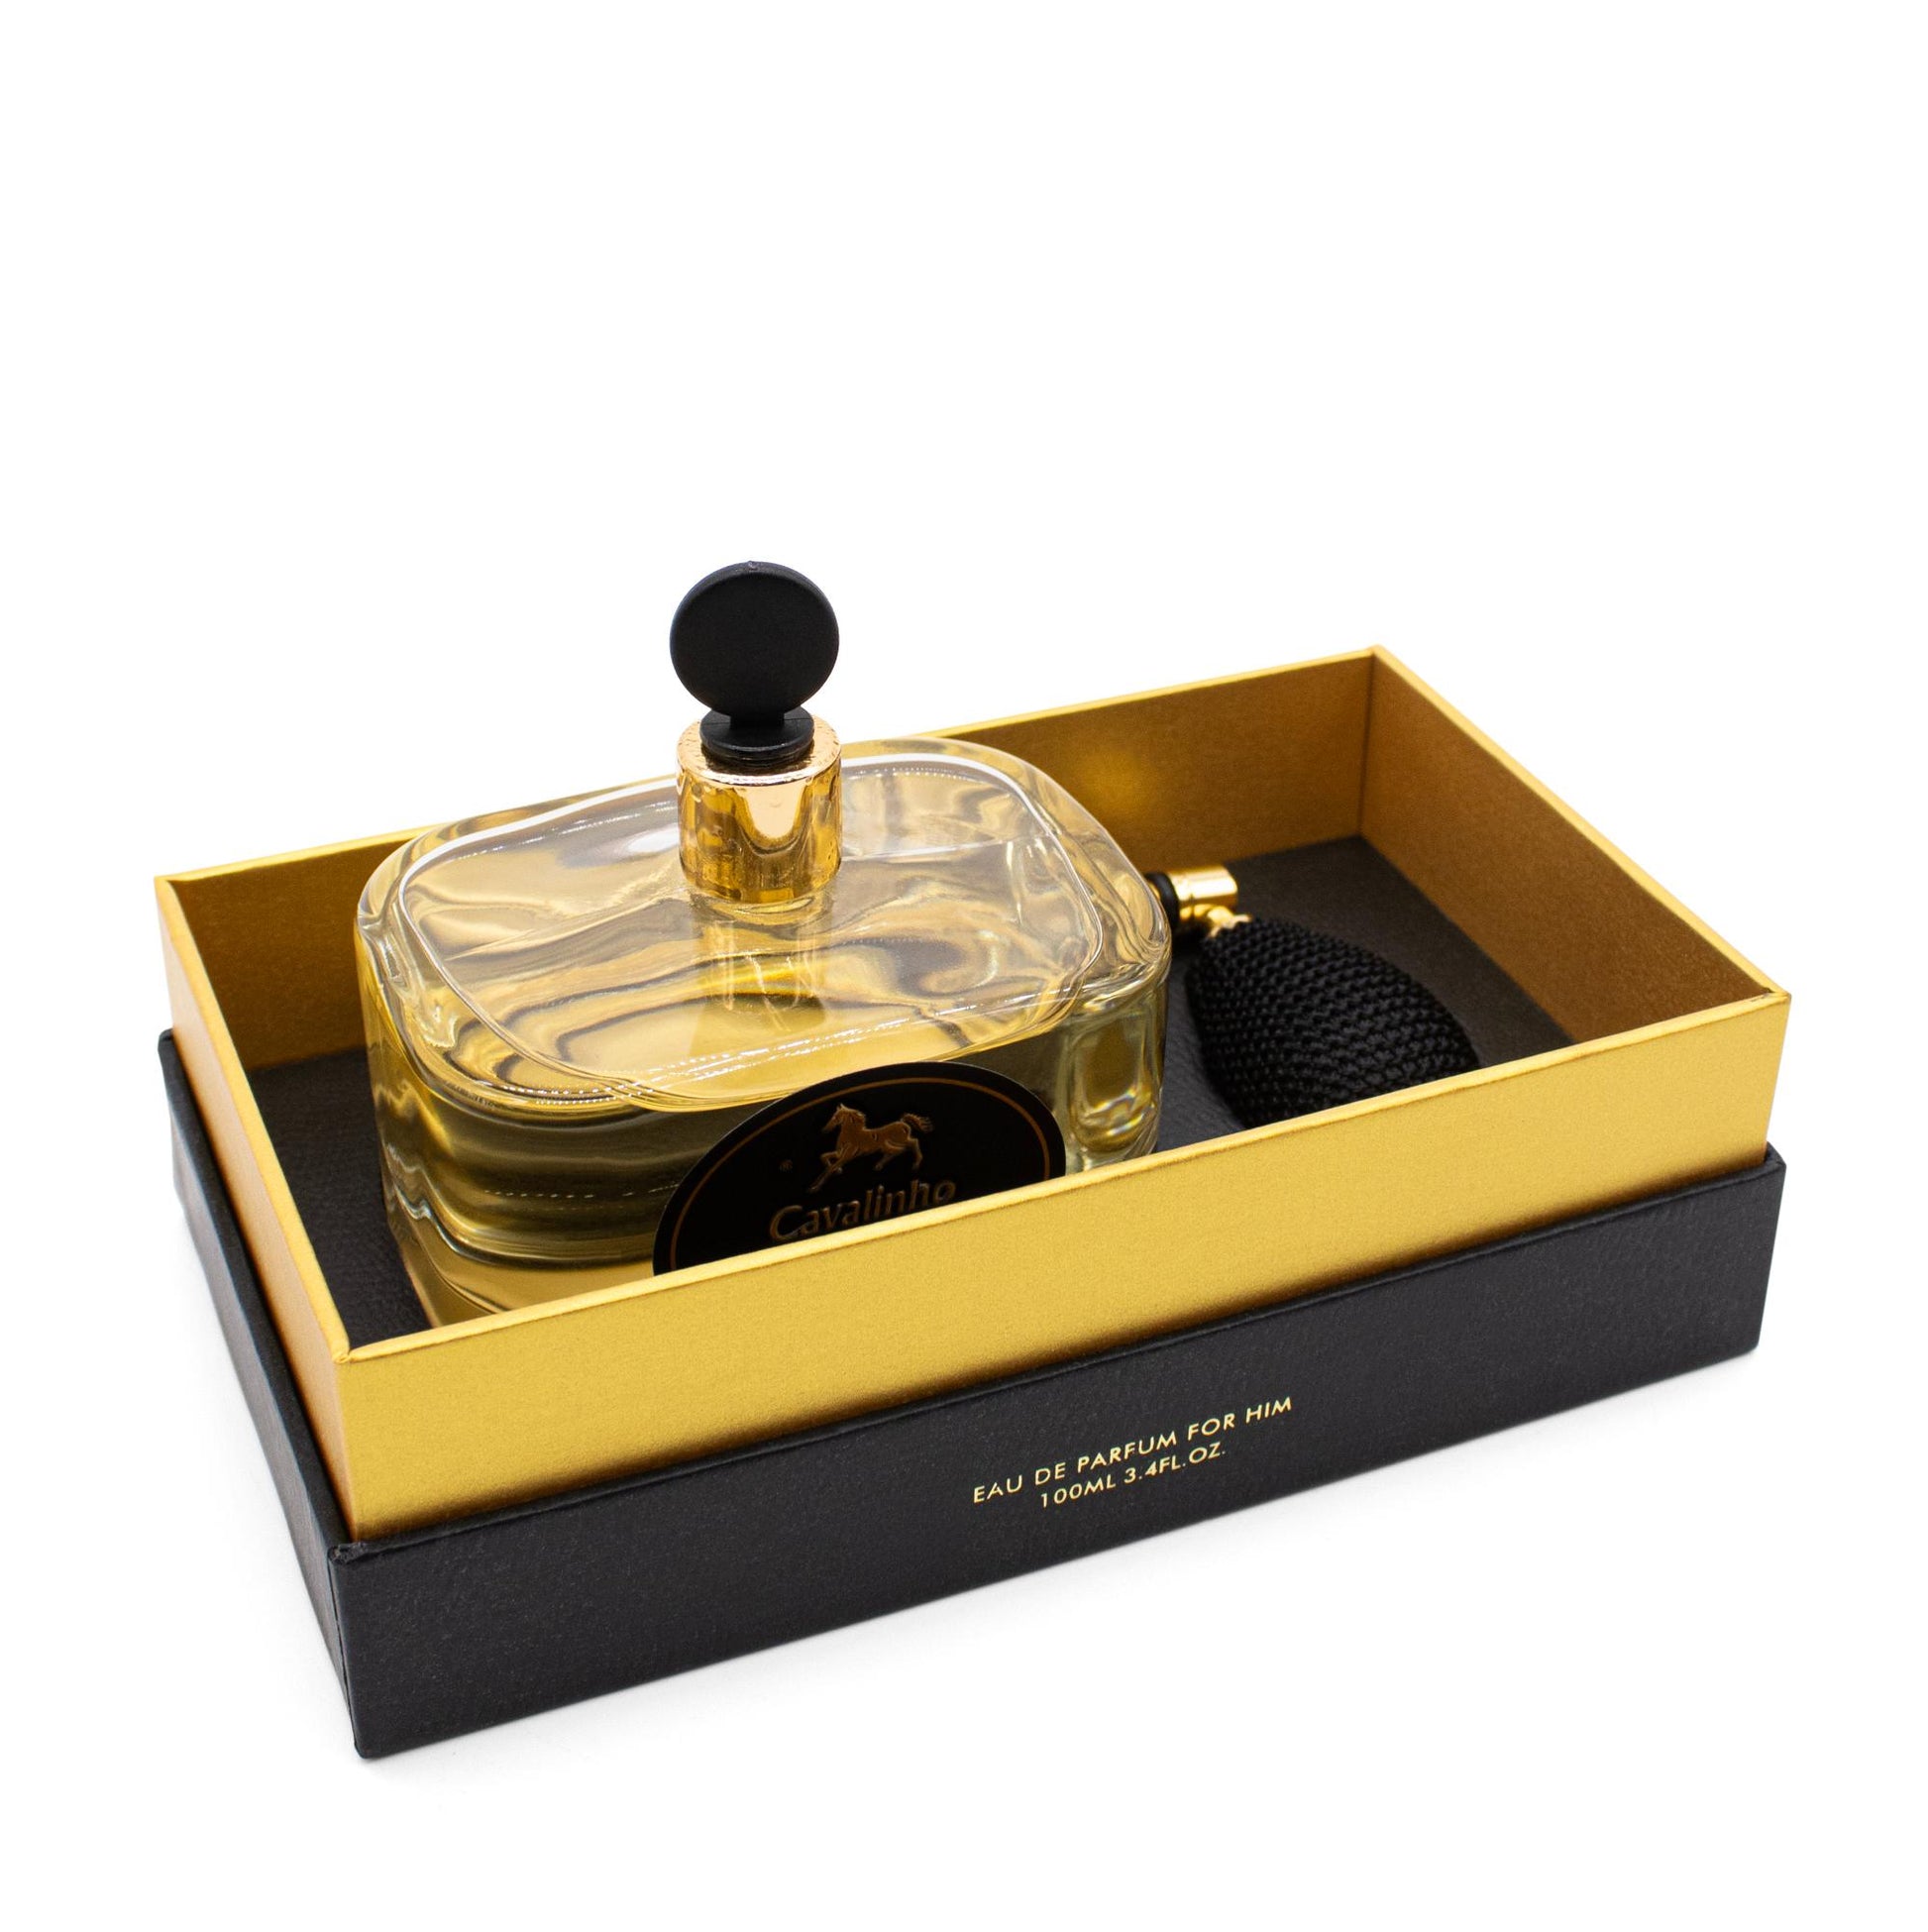 Cavalinho Cavalinho Gold Perfume - 100ml - 38010004.00.10_2